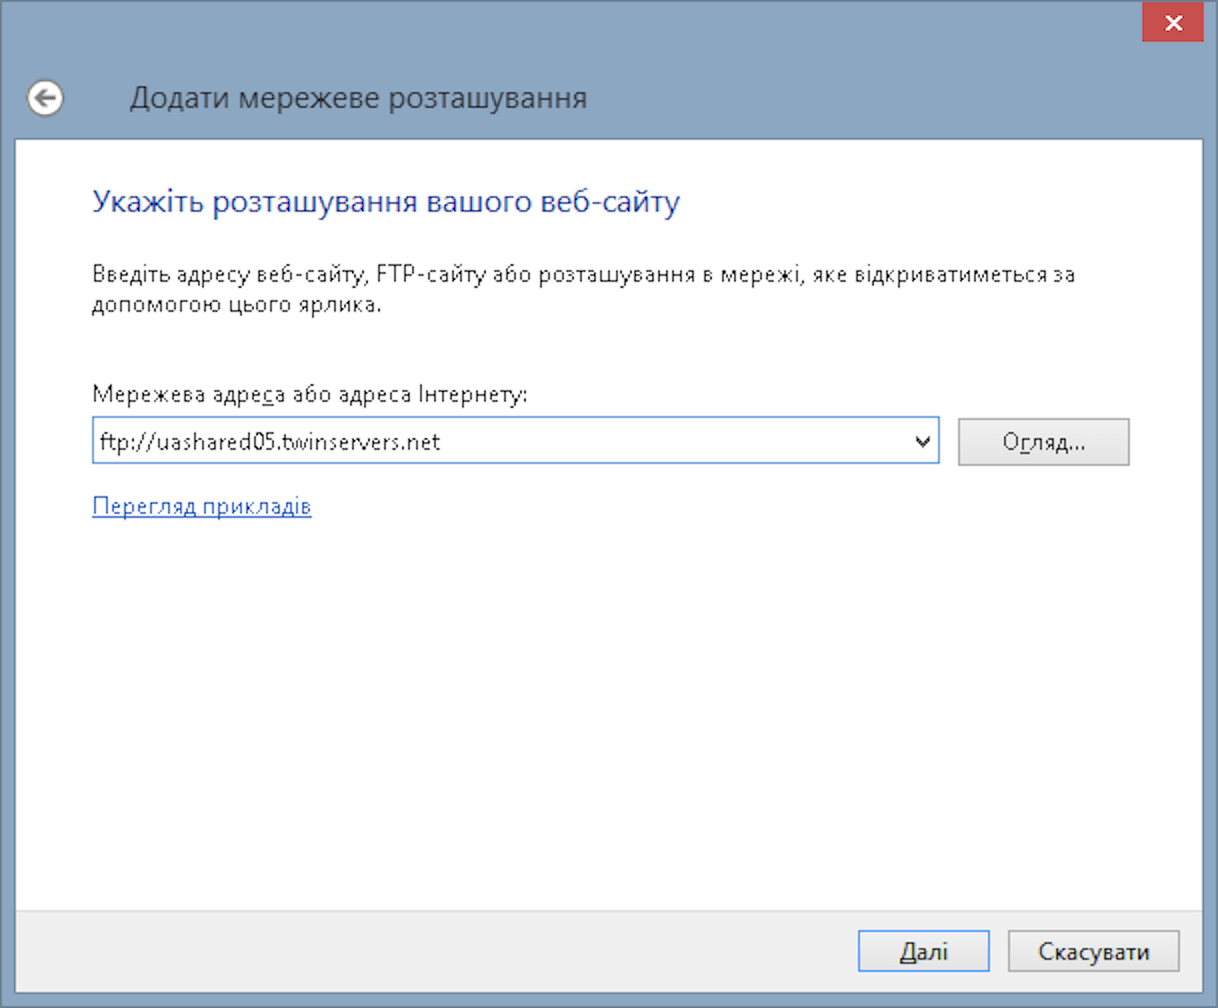 Підключення по фтп у Windows — Майстер додавання мережного розташування - Крок № 3